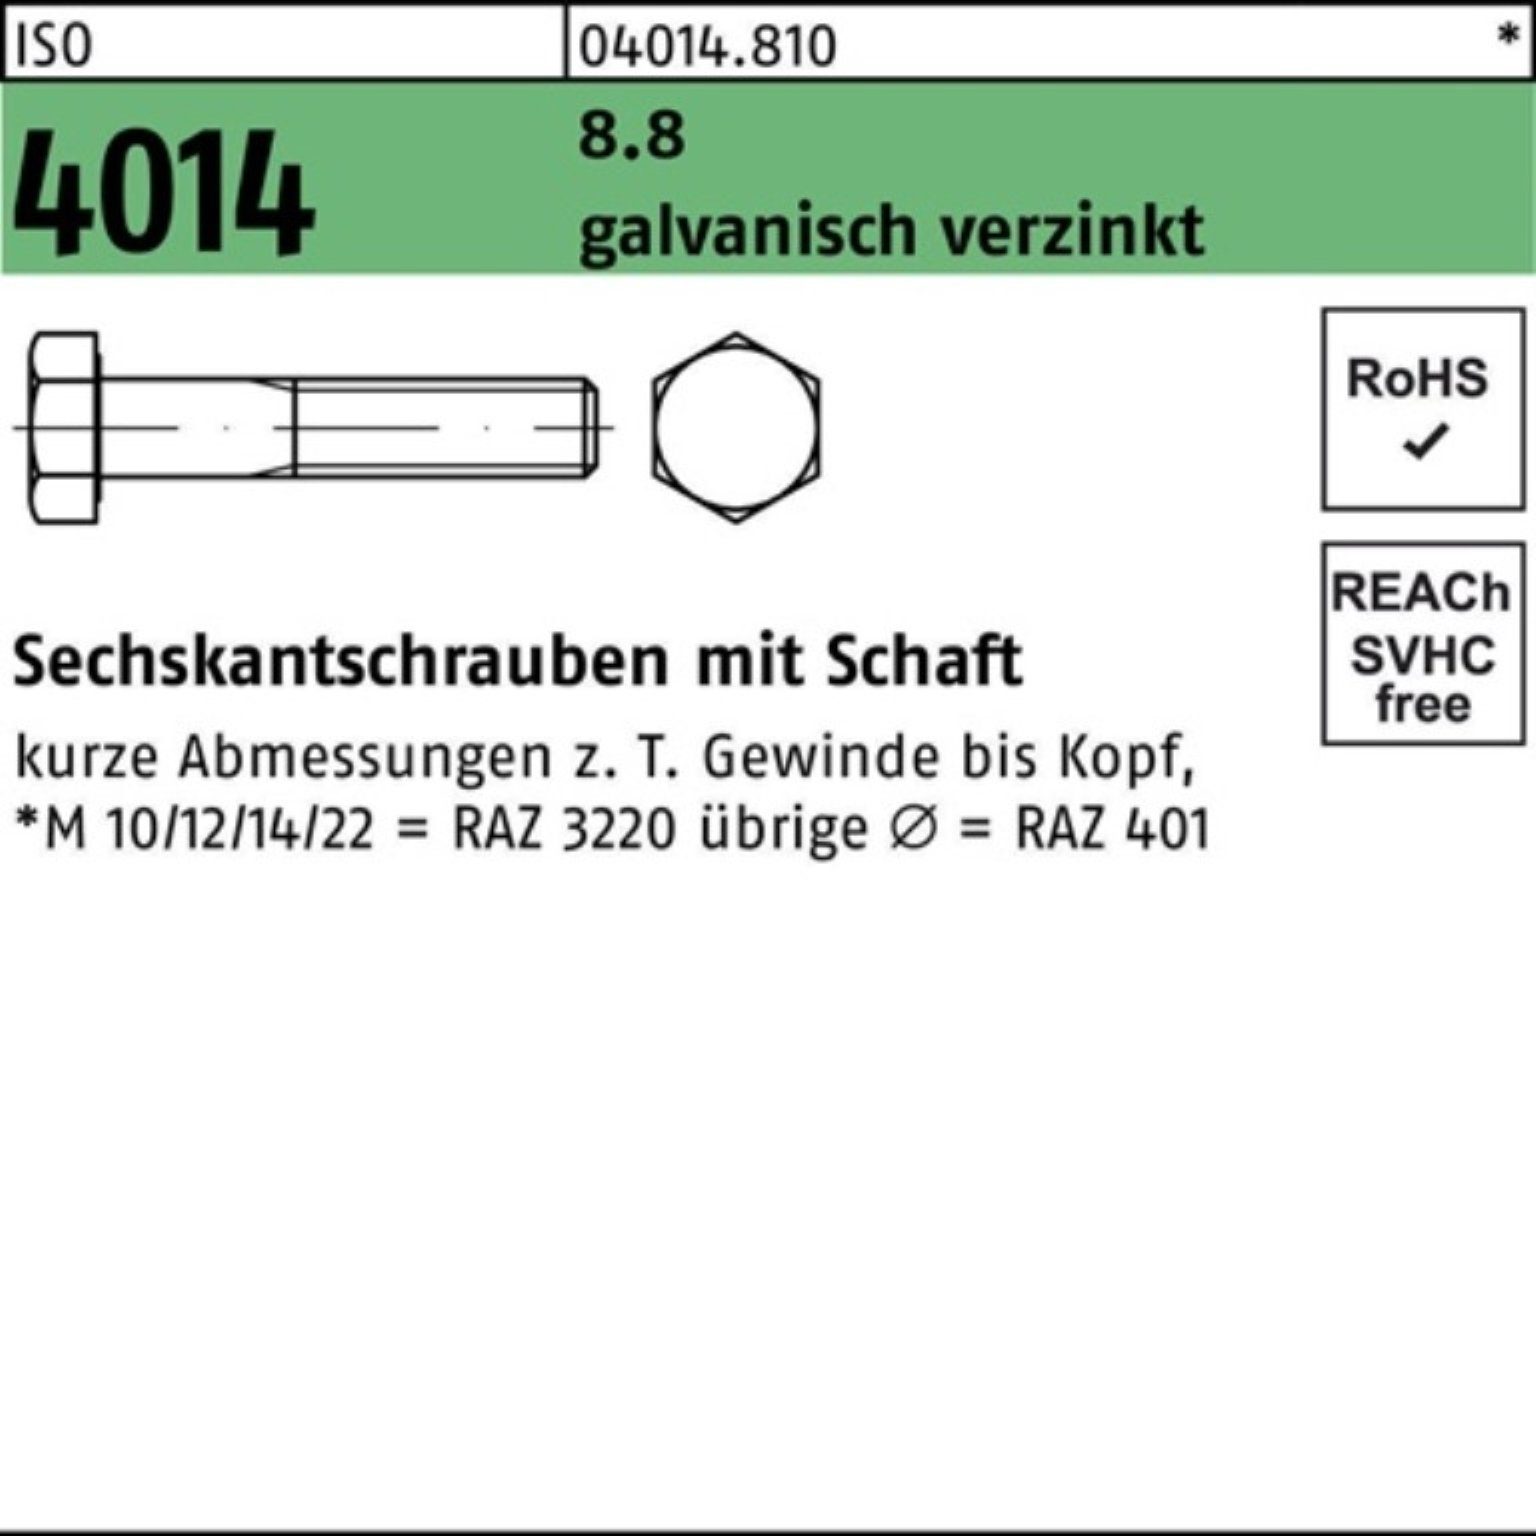 Bufab Sechskantschraube 100er Pack Sechskantschraube galv.verz. 4014 1 8.8 ISO Schaft 300 M36x